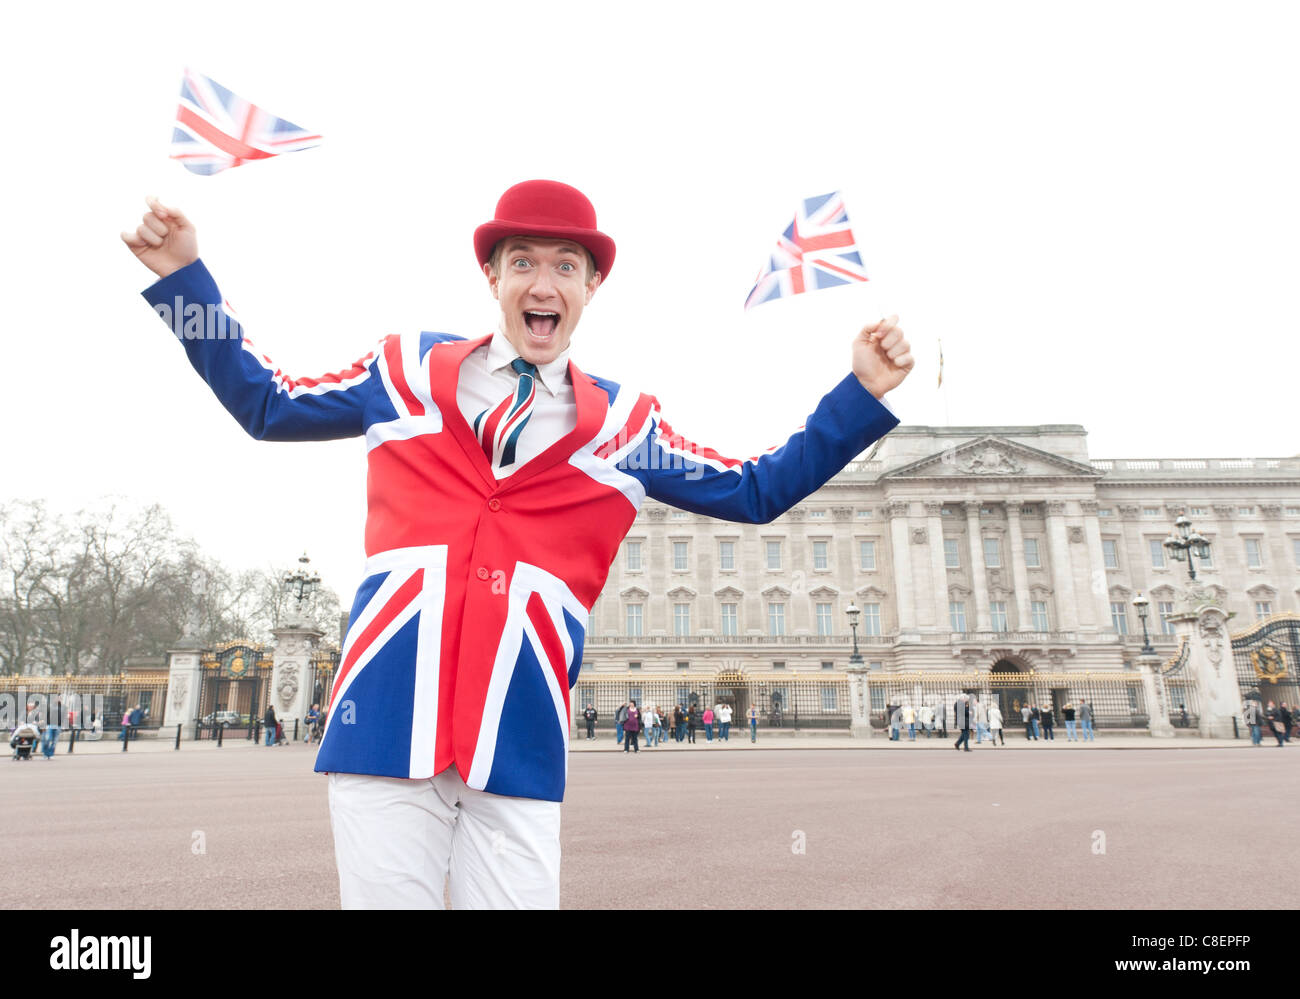 Homme portant patriotique Union Jack agitant des drapeaux de l'Union tenue à Buckingham Palace, Londres. Brexiteer, Brexit. Banque D'Images